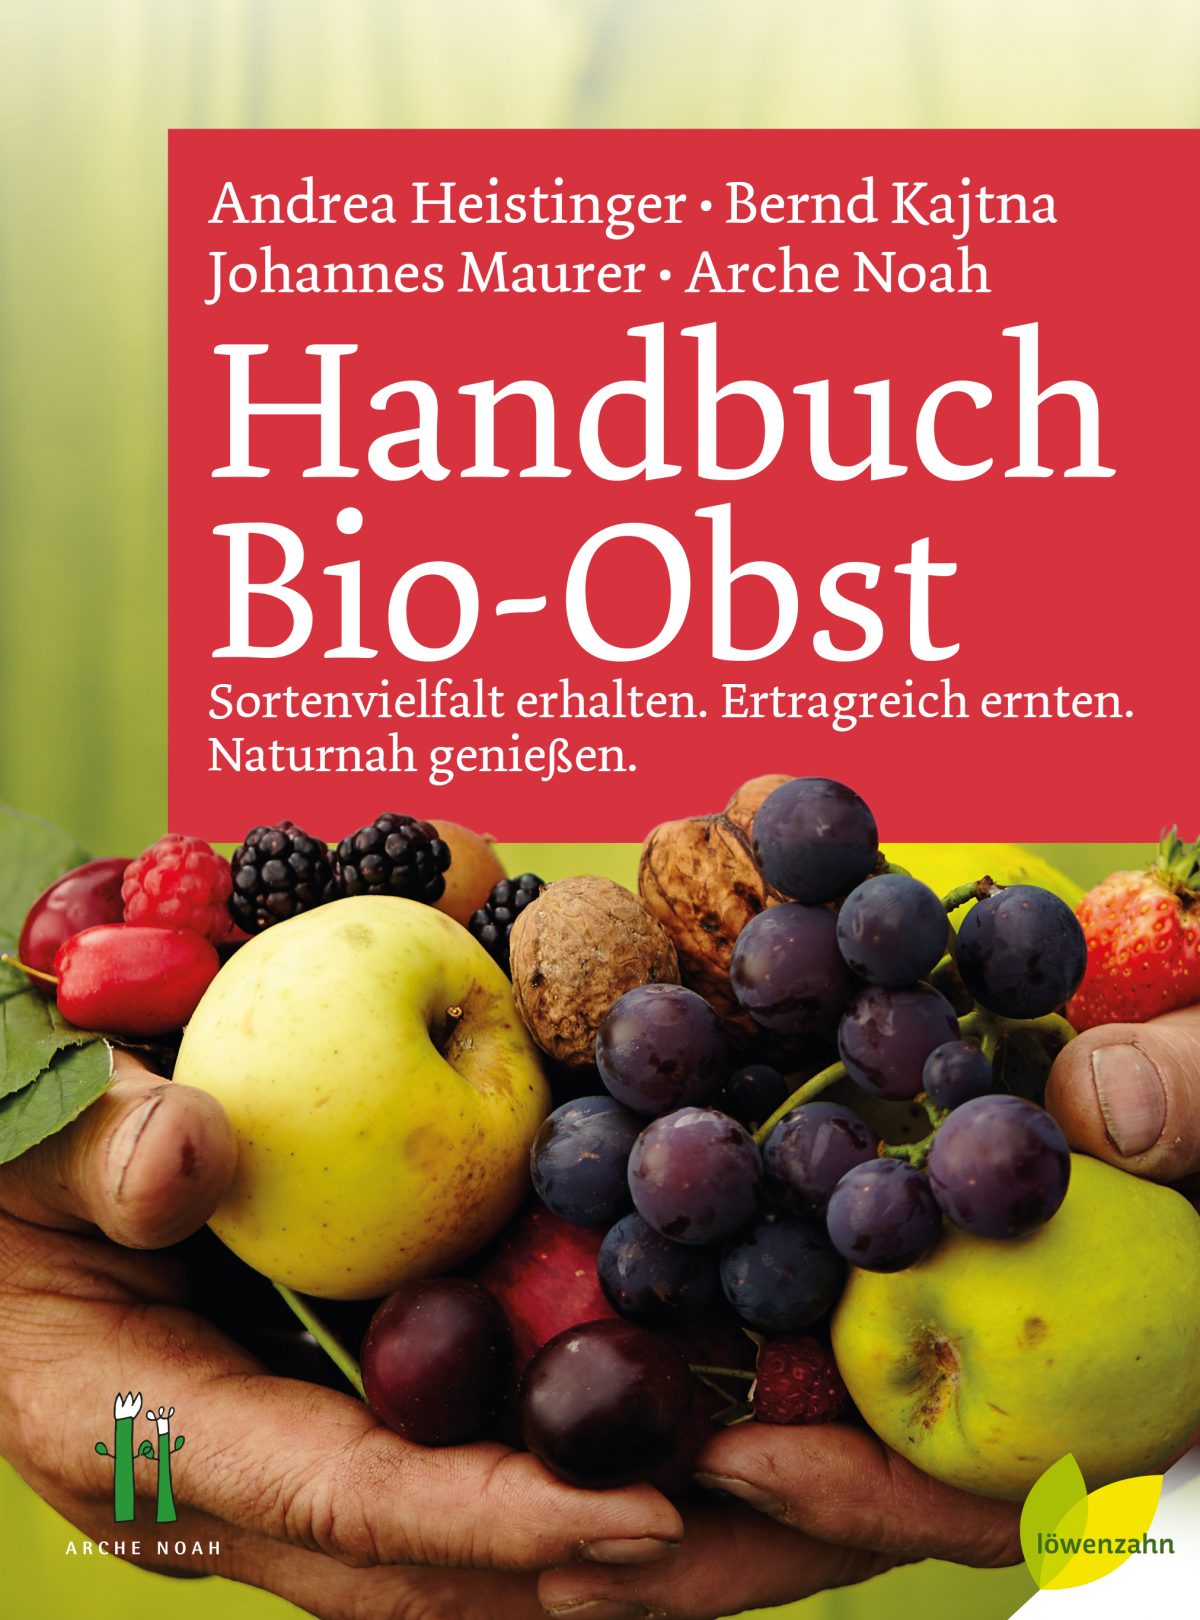 "Handbuch Bio-Obst"